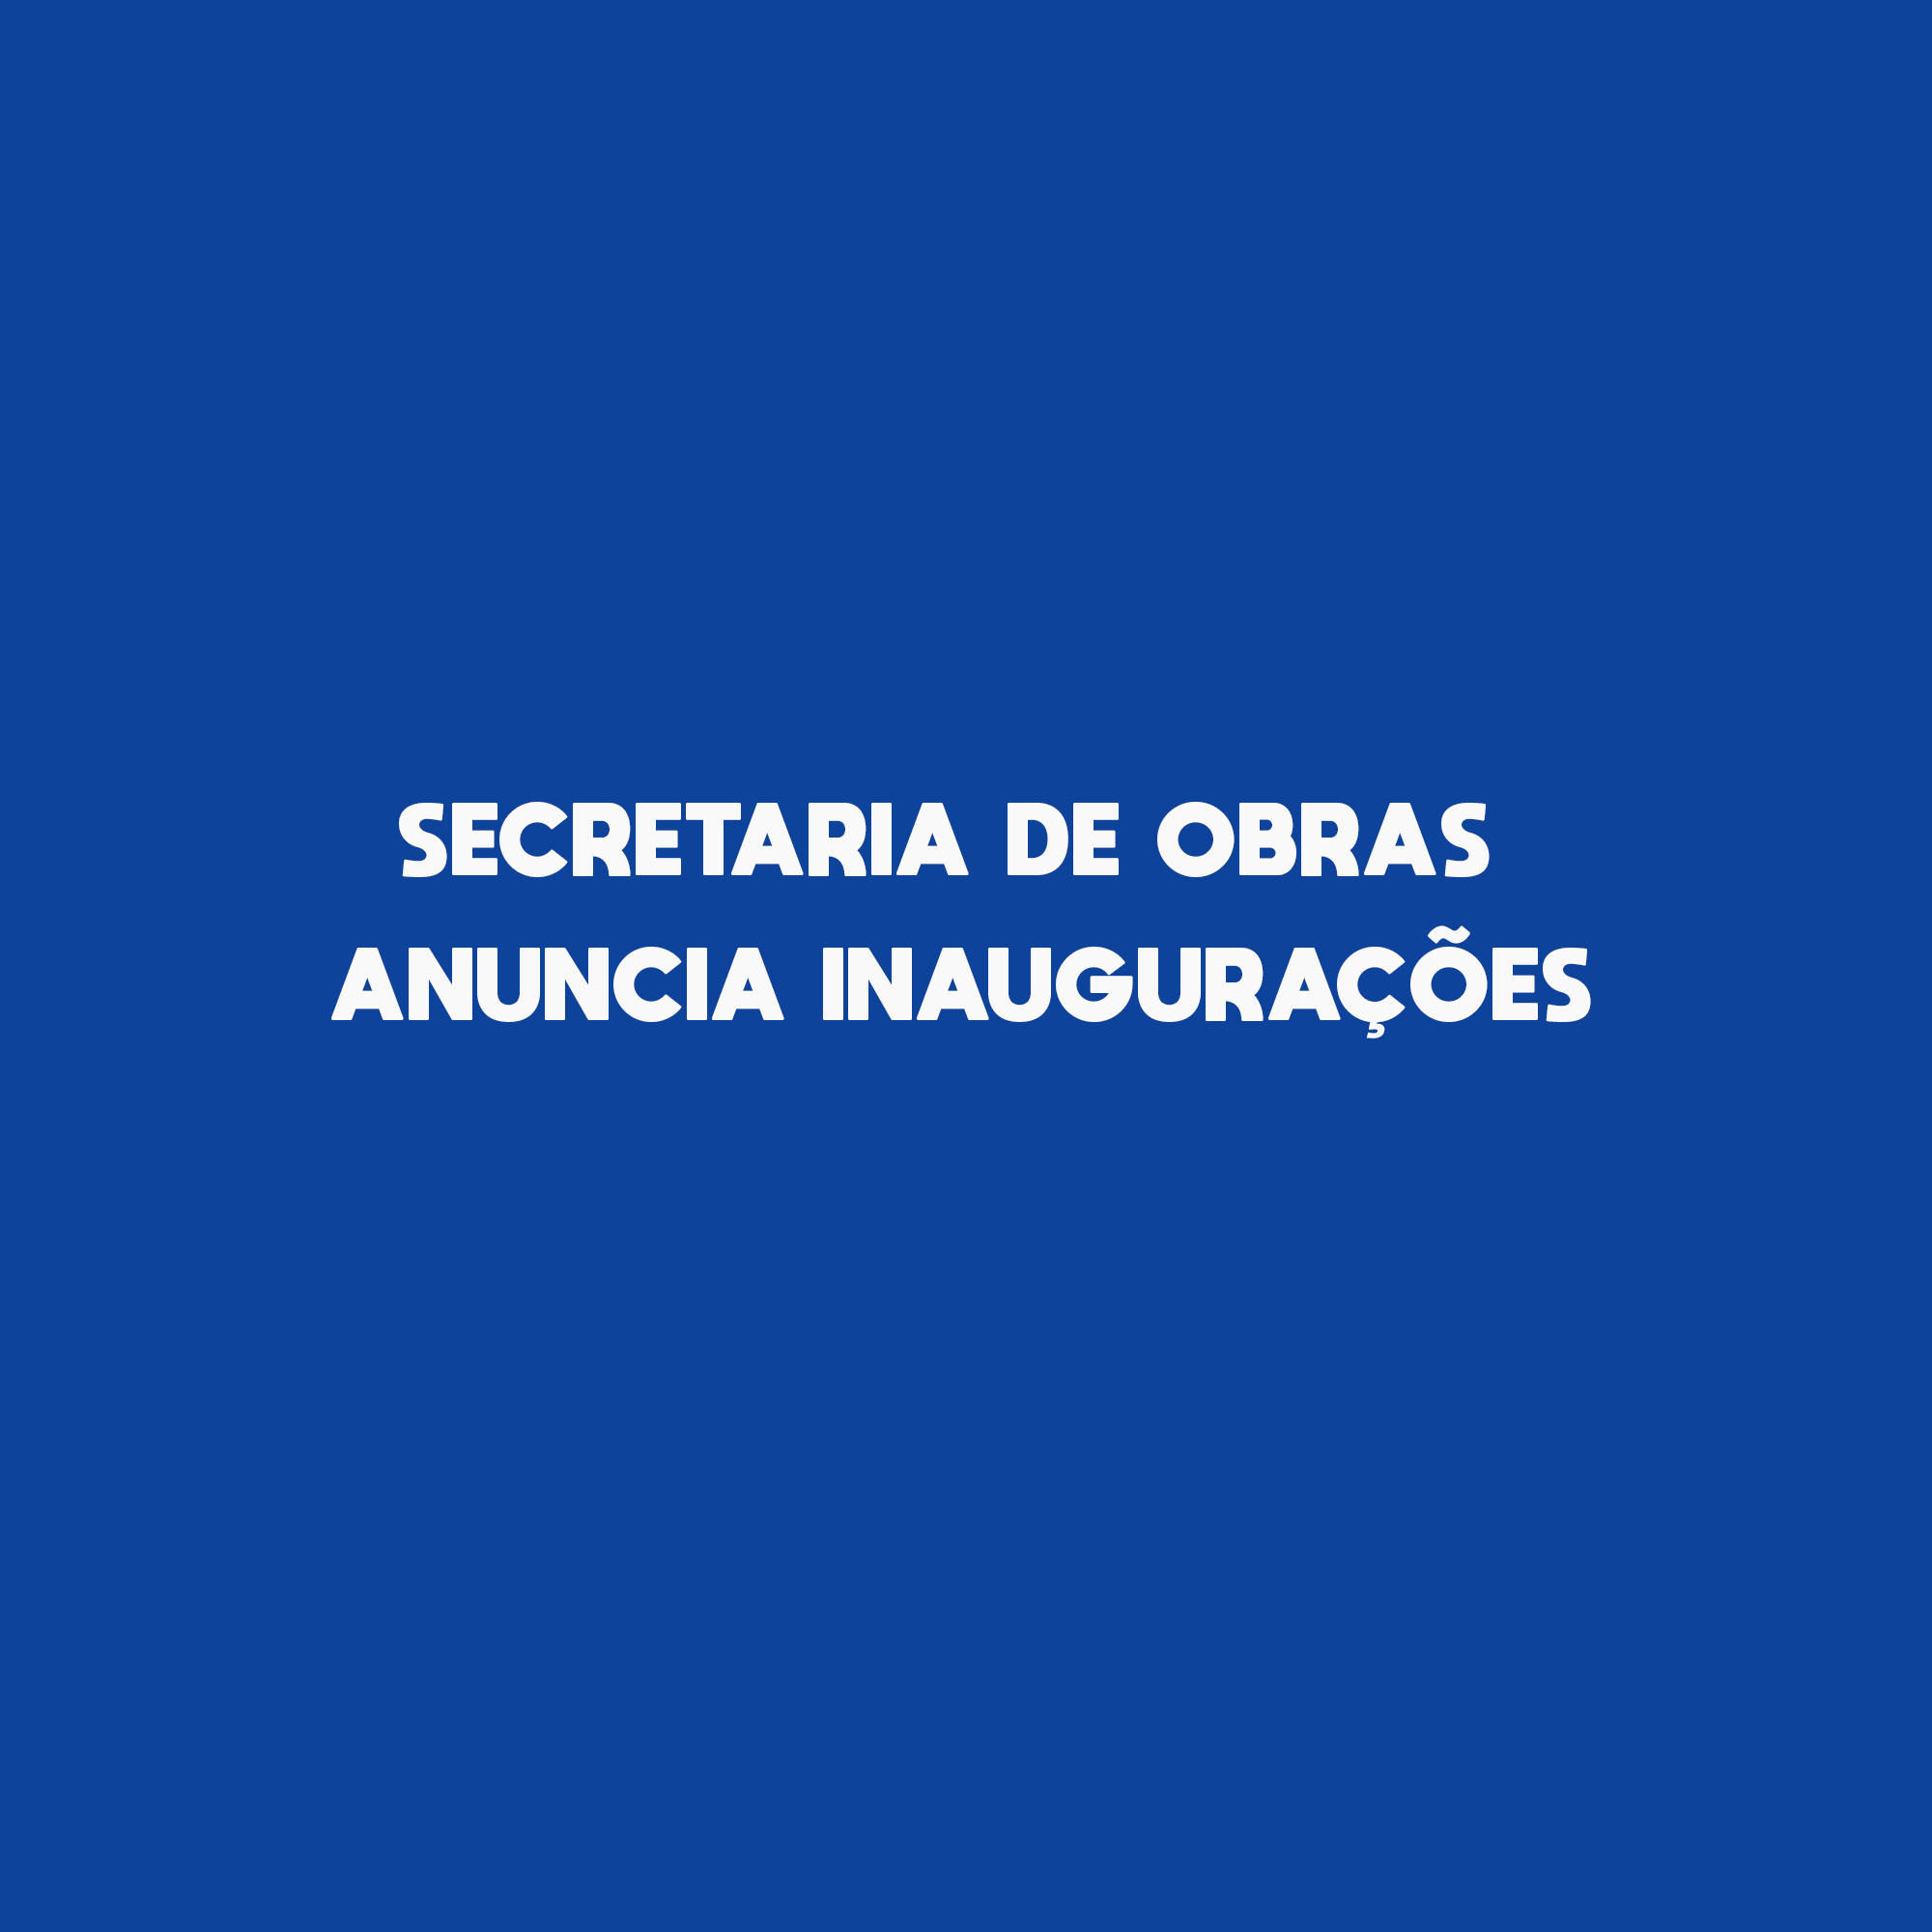 Secretaria de Obras anuncia inaugurações 